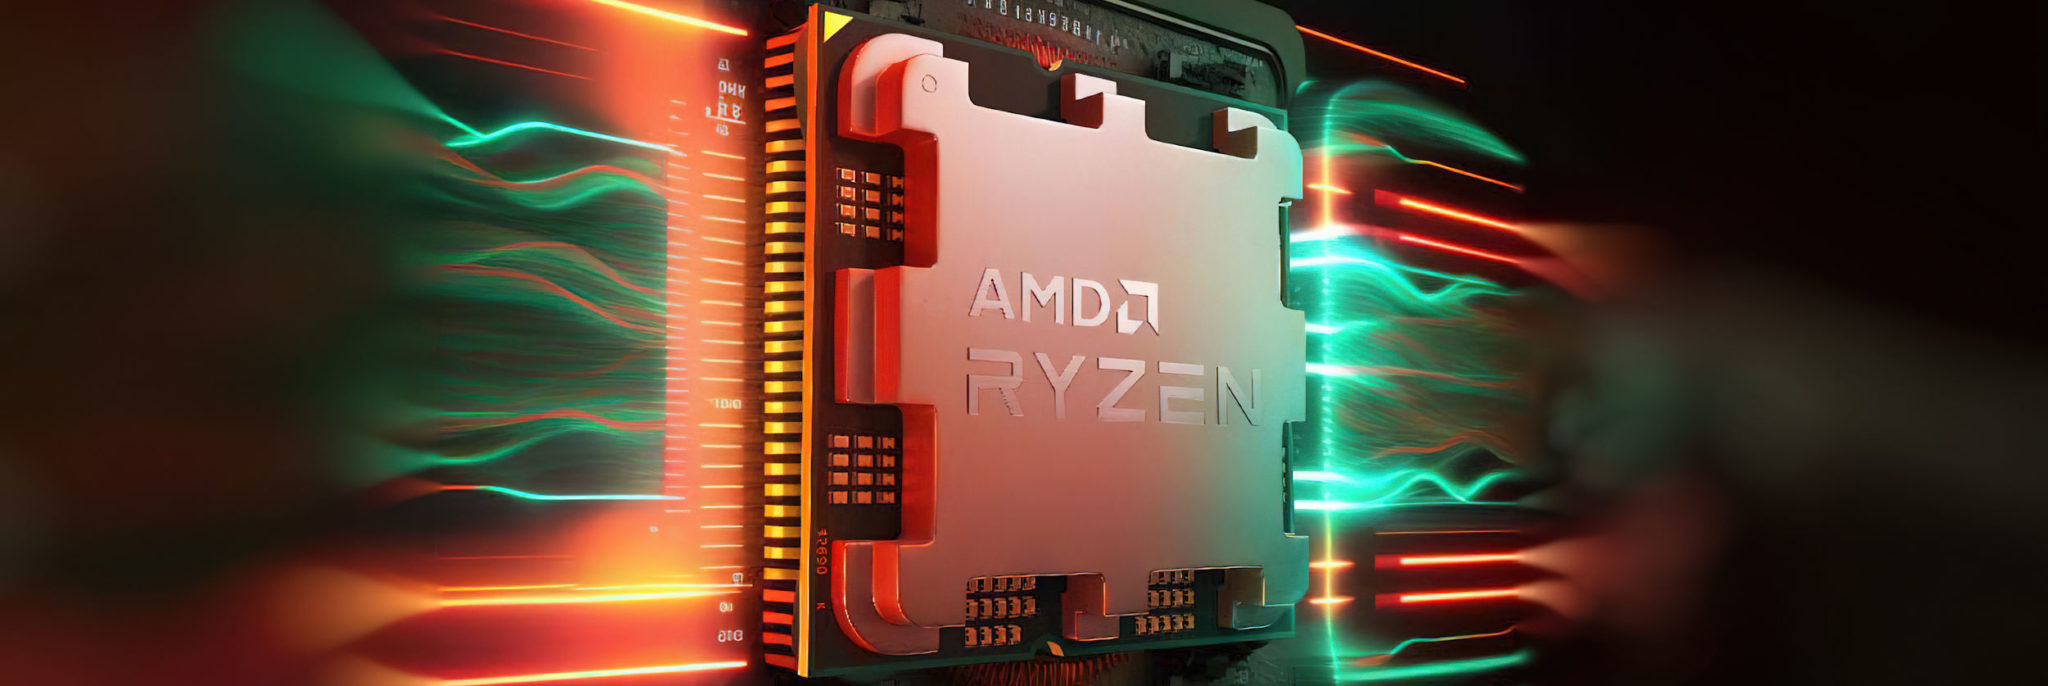 AMD-RYZEN-RAPHAEL-ZEN4-HERO-BANNER-2048x686.jpg